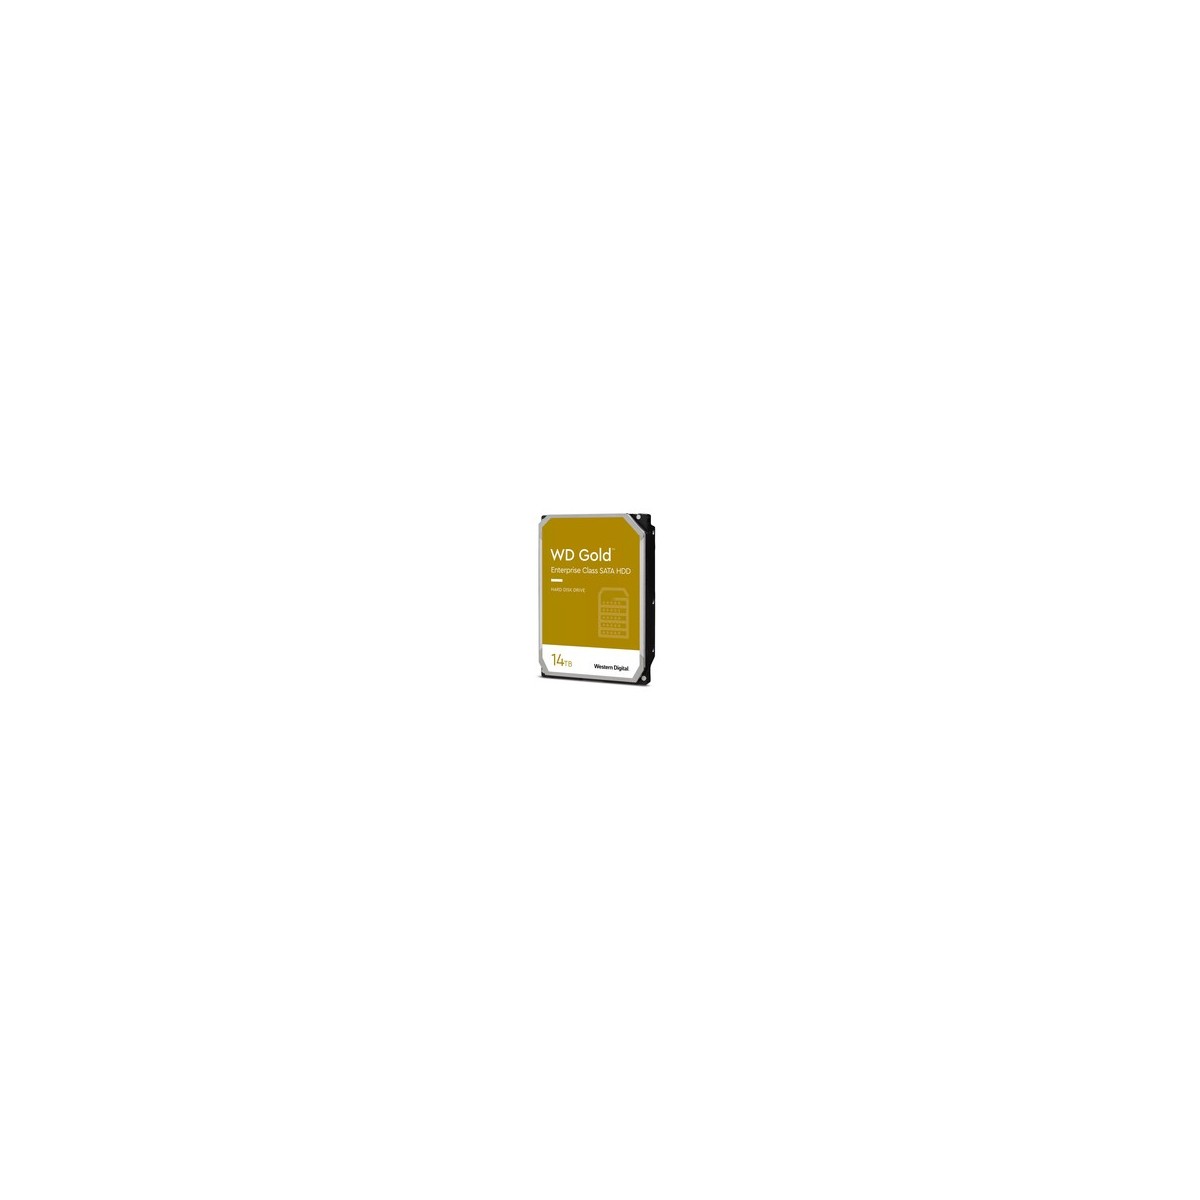 WD HDD Gold 14TB SATA 256MB 3.5 - Hdd - Serial ATA